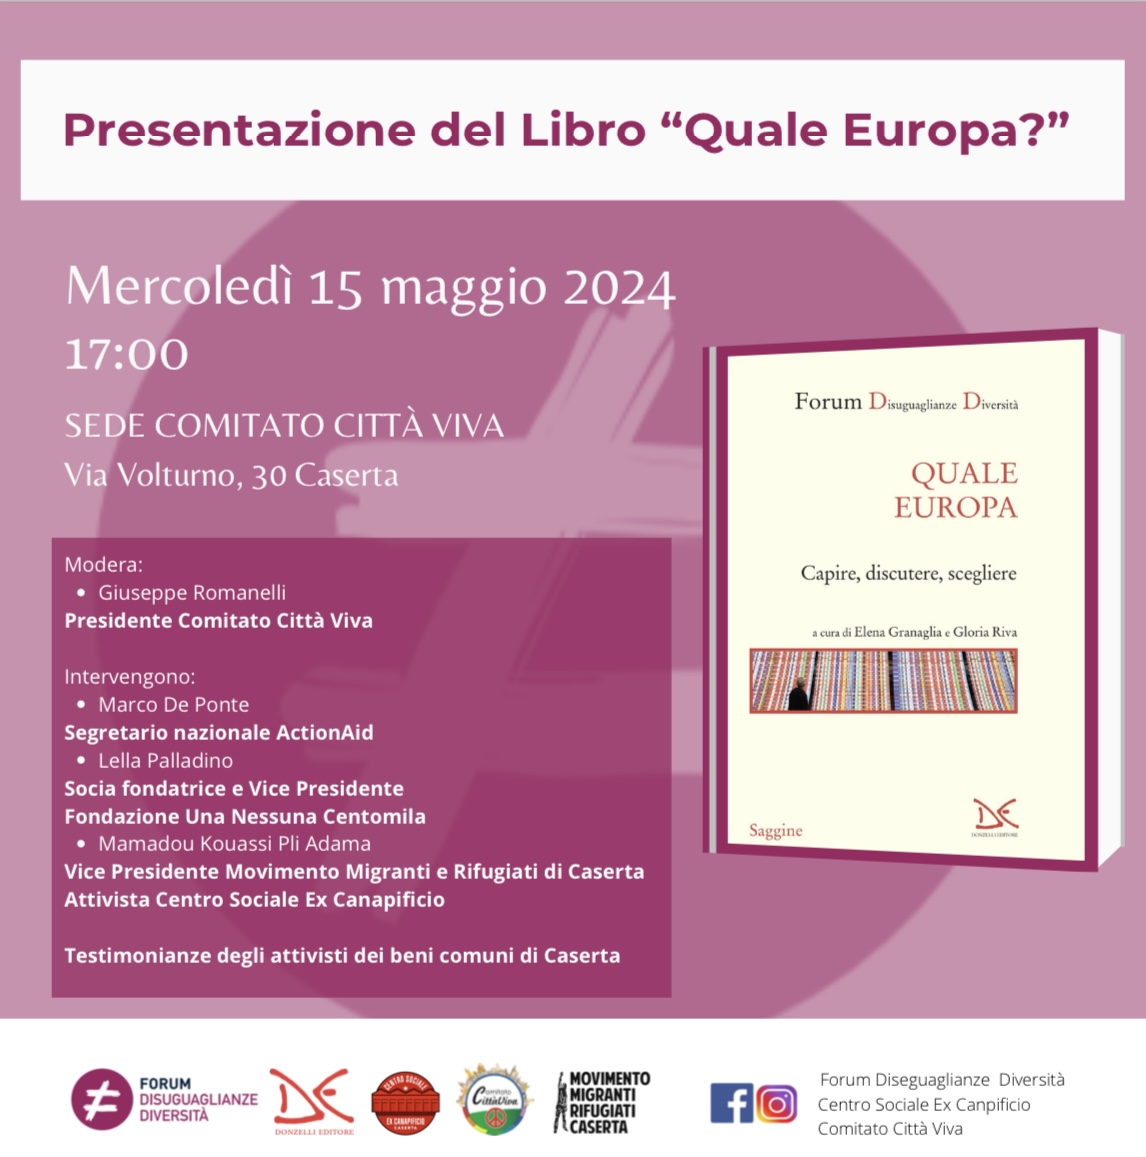 Prosegue oggi a Caserta alle 17.00 il tour del libro #QualeEuropa con @DD_Forum e @MarcoDePonte. Un'occasione per confrontarsi e informarsi sulle sfide e le opportunità europee.